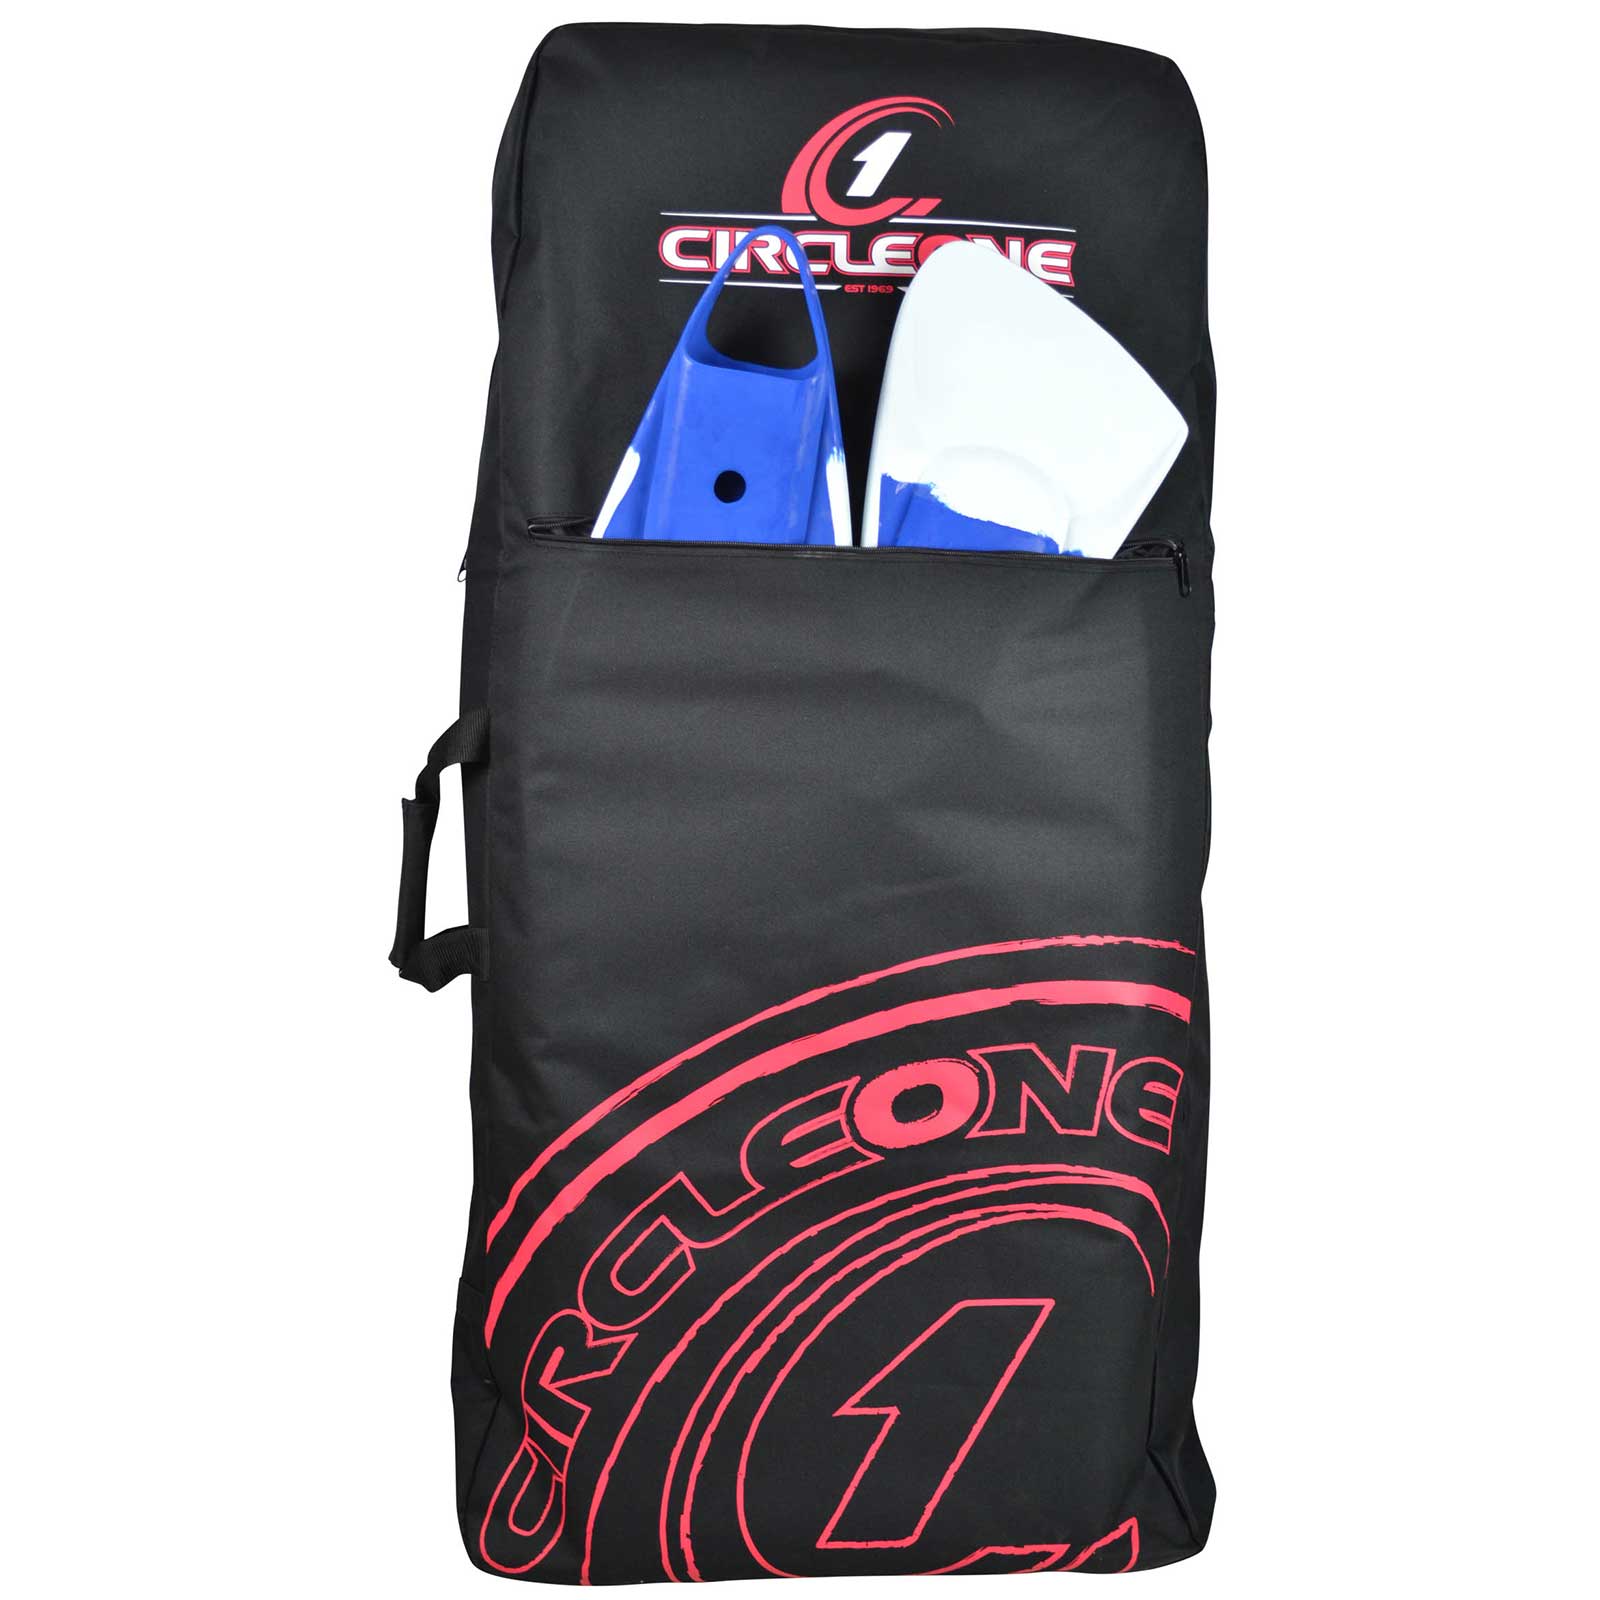 Circle One Bodyboard Travel Bag